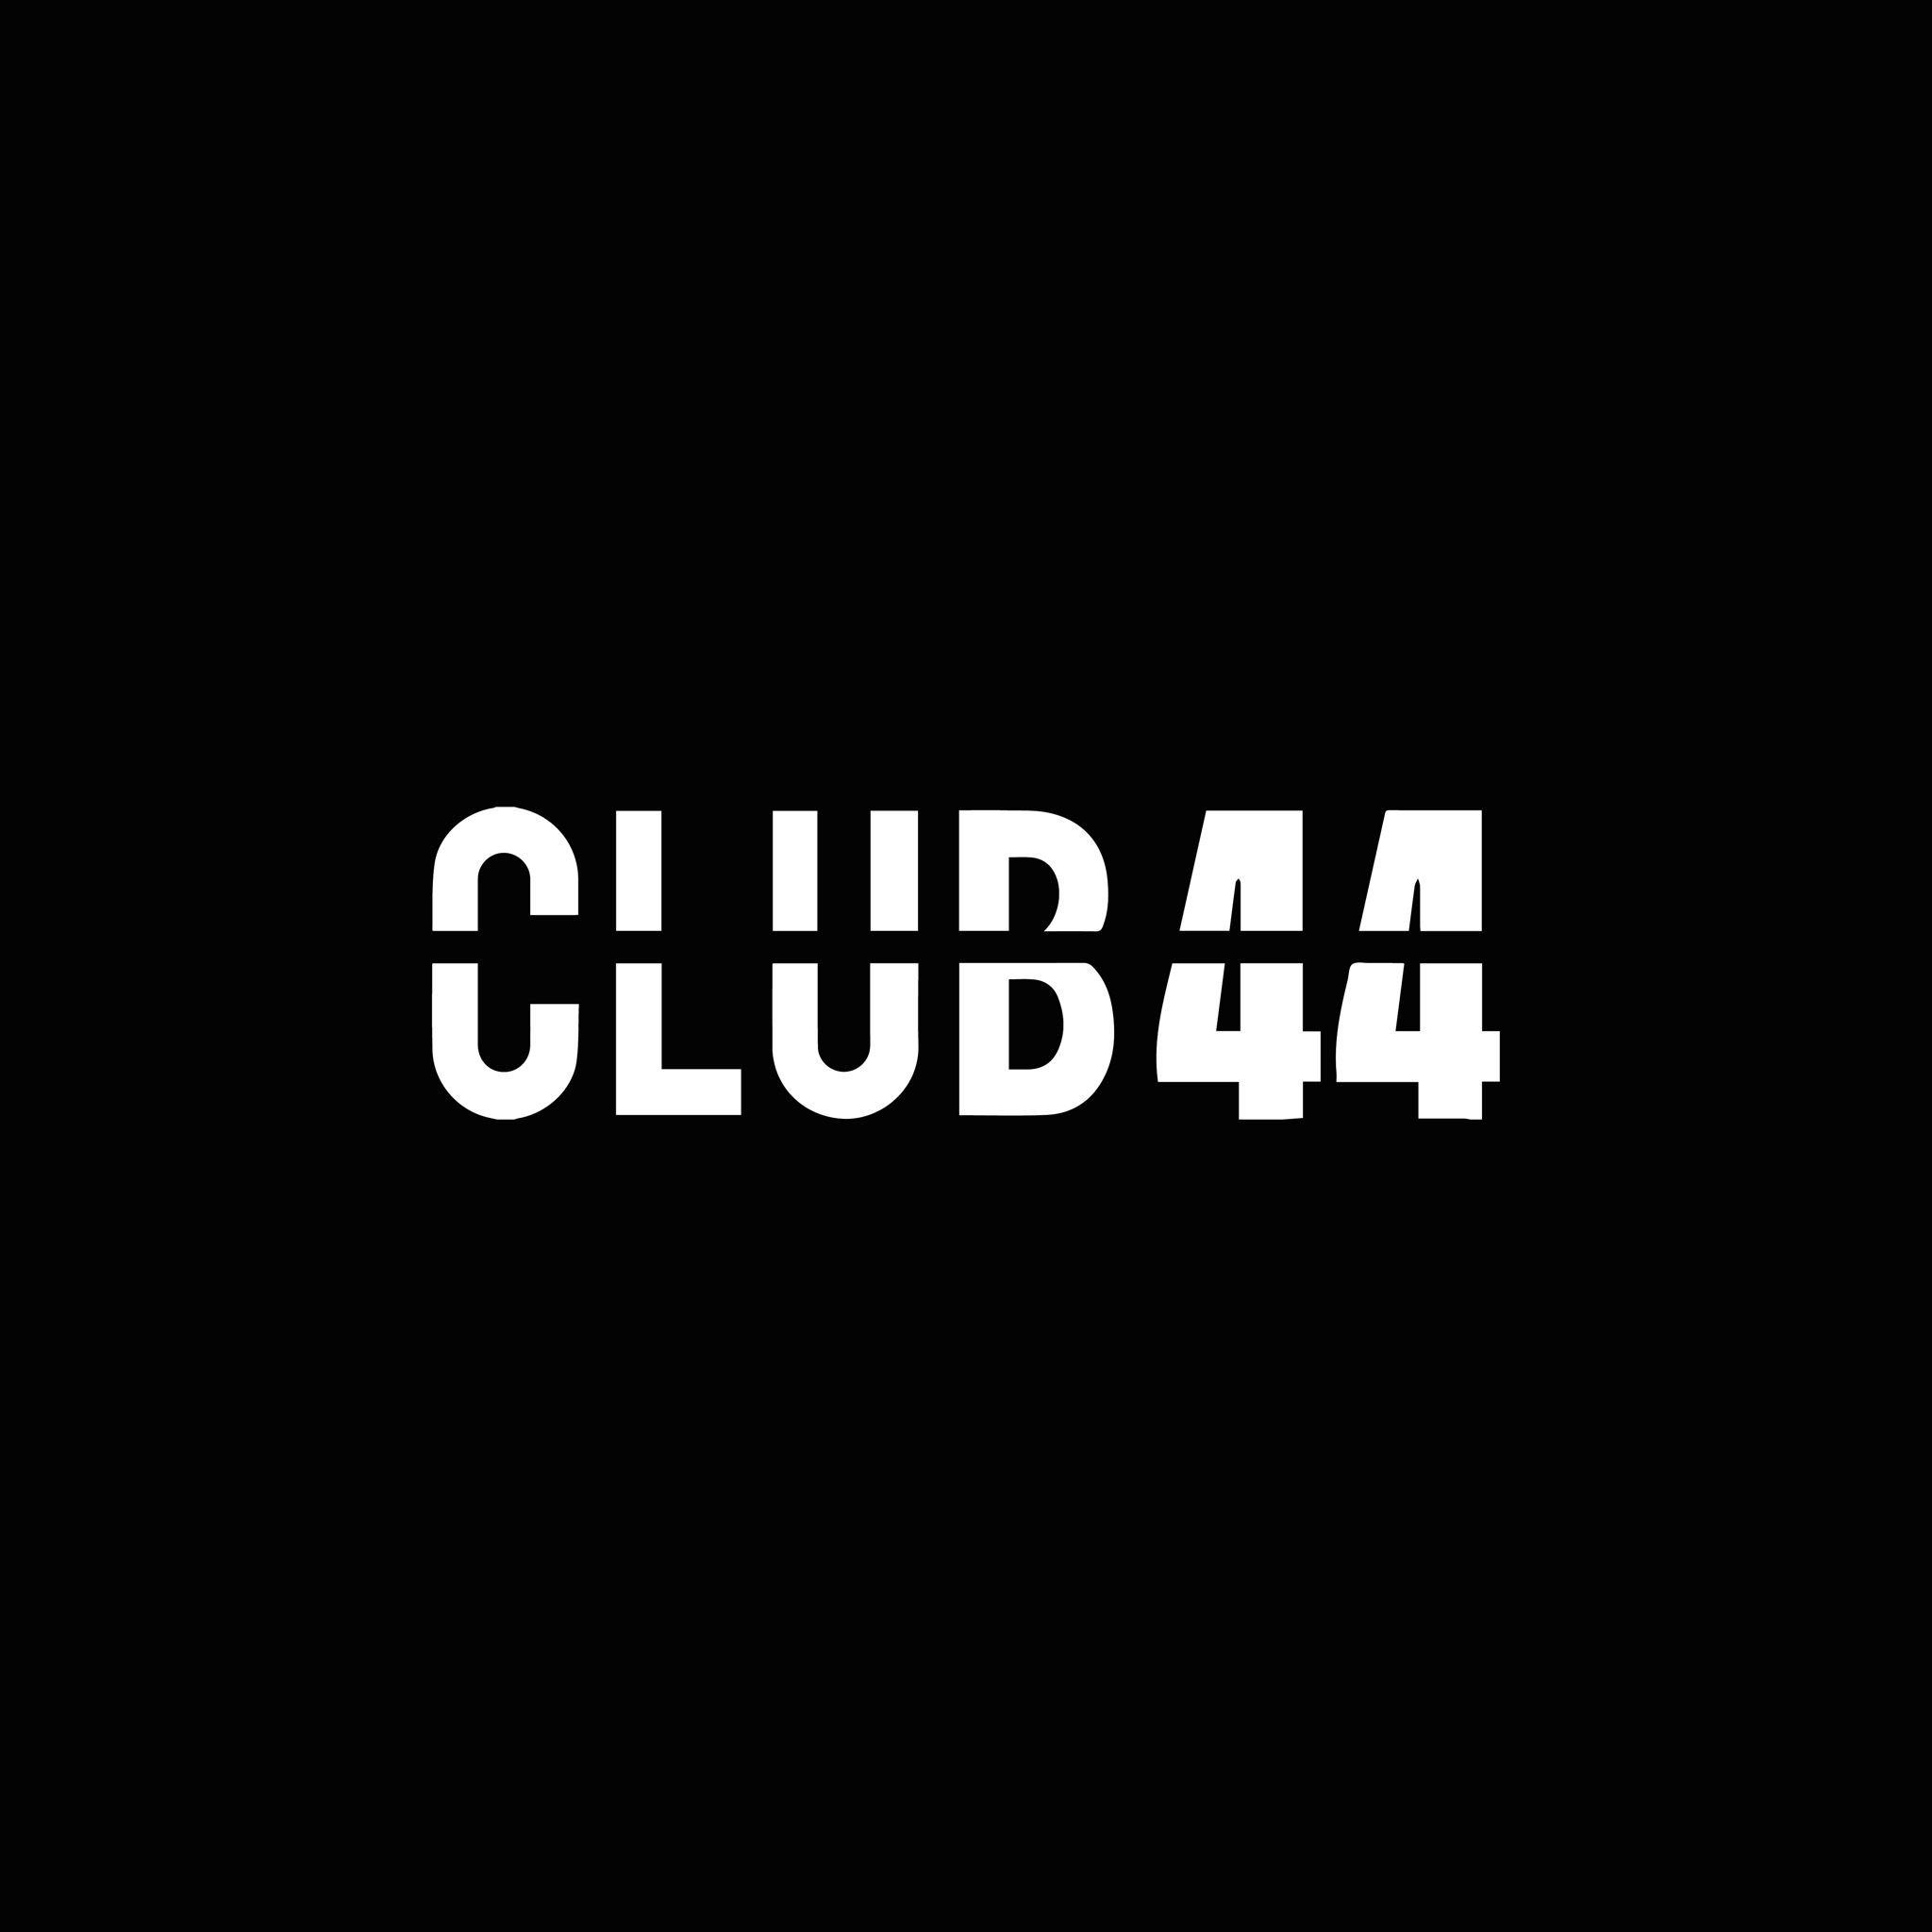 CLUB 44 MILANO